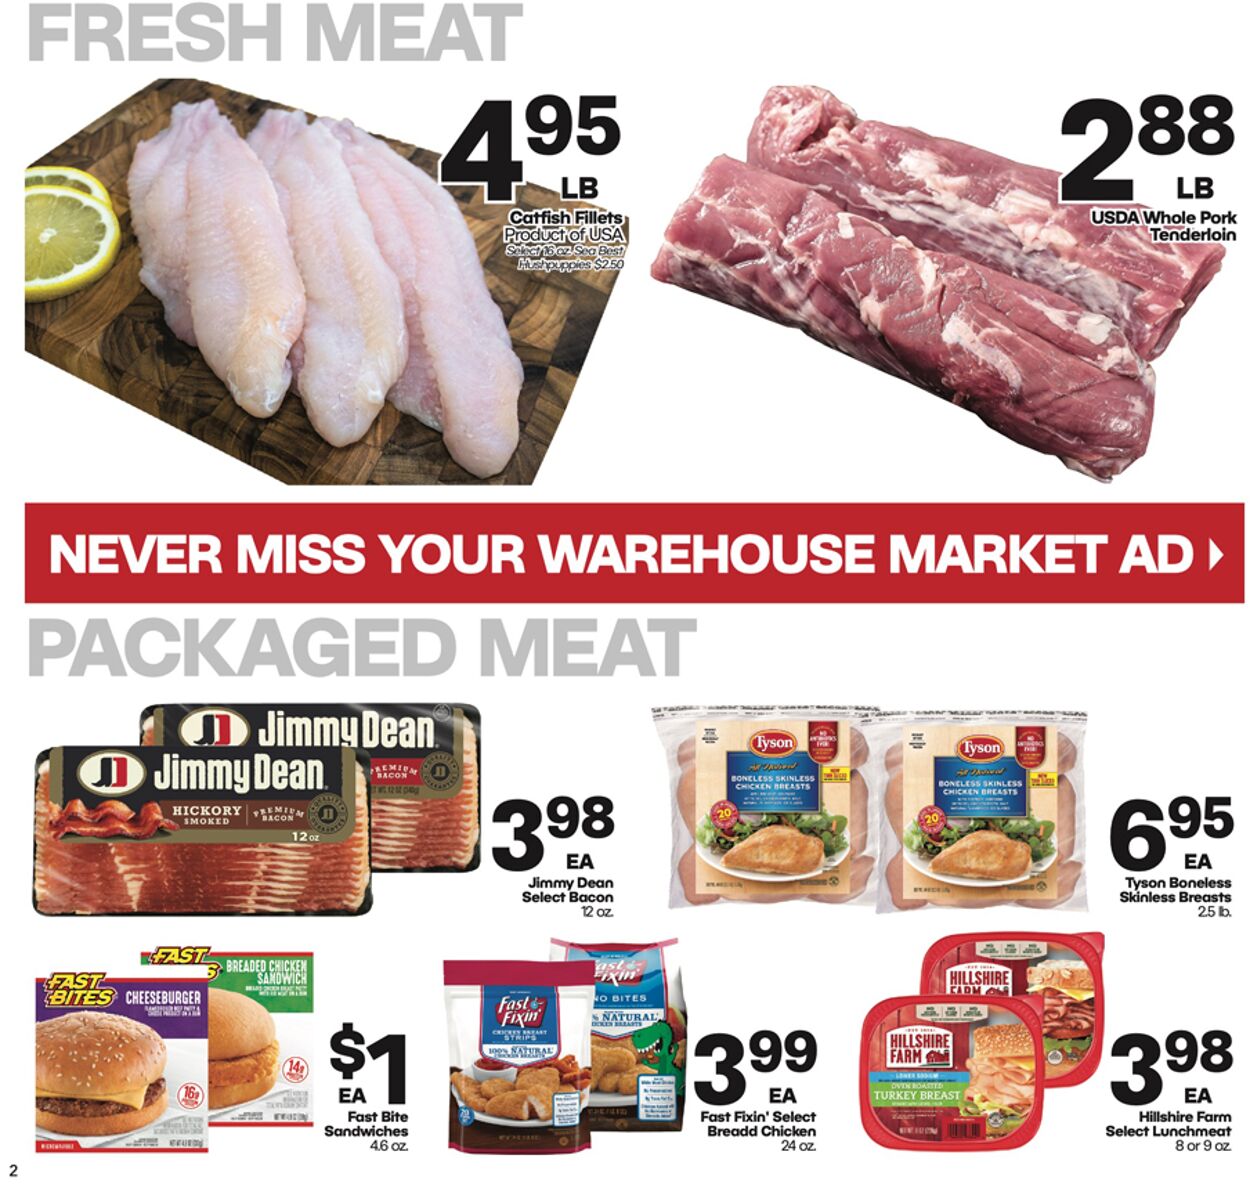 Catalogue Warehouse Market from 07/26/2023